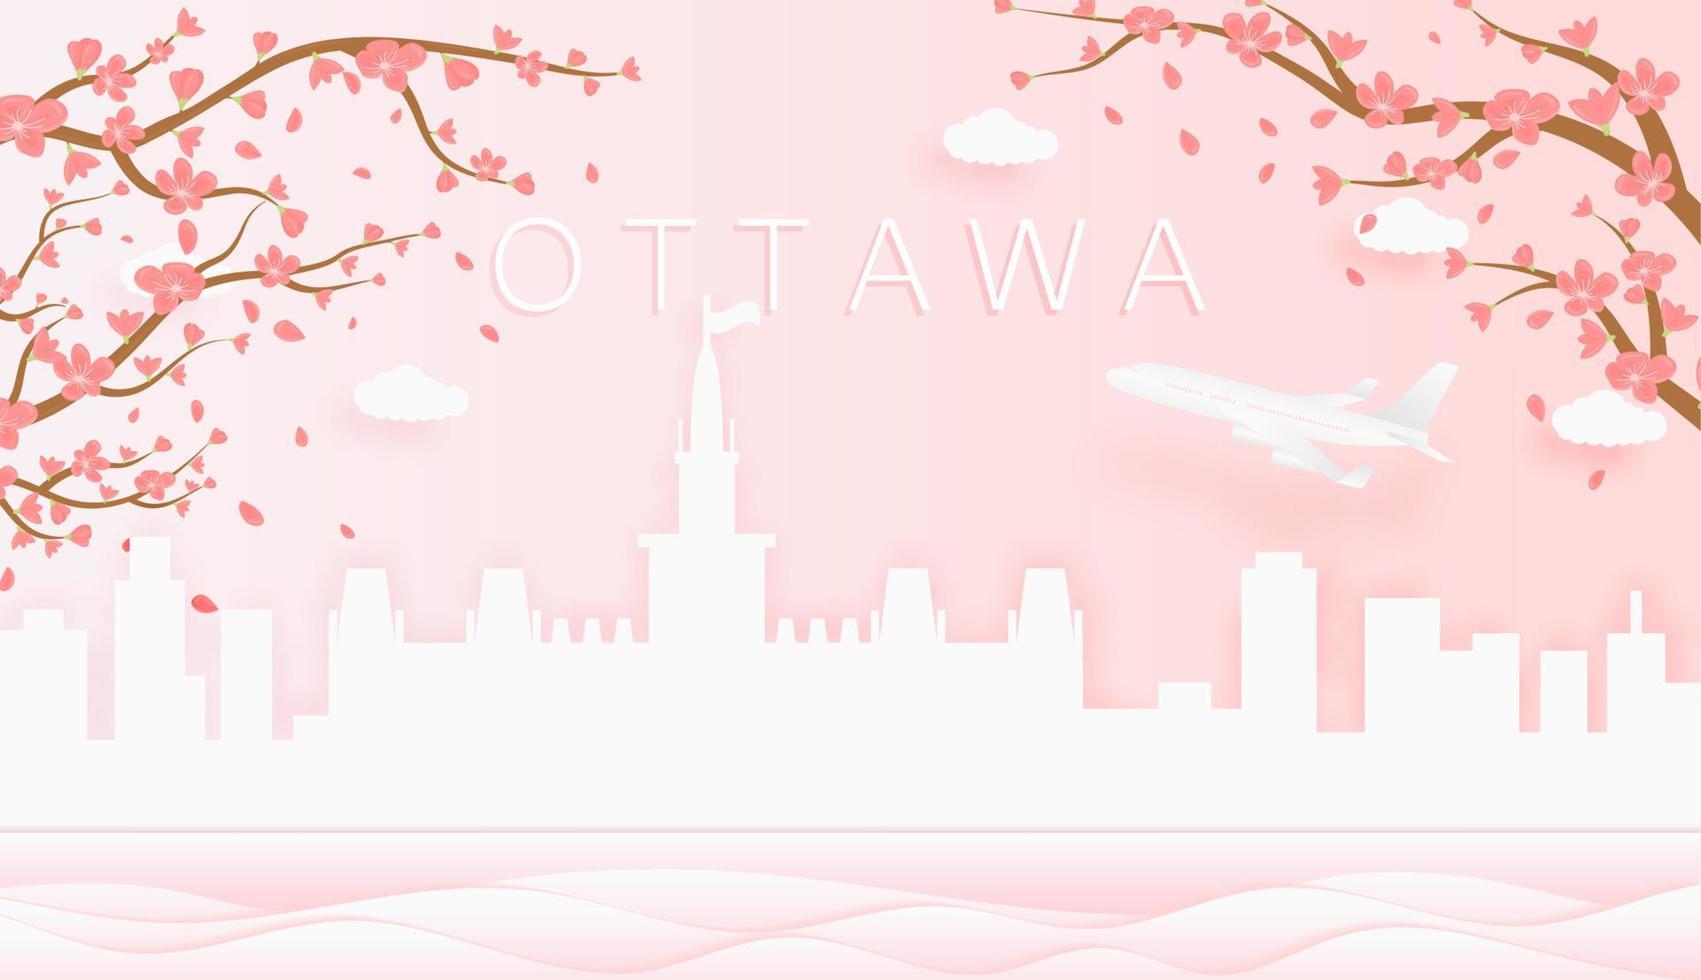 panorama viaje tarjeta postal, póster, excursión publicidad de mundo famoso puntos de referencia de Ottawa, primavera temporada con floreciente flores en árbol vector